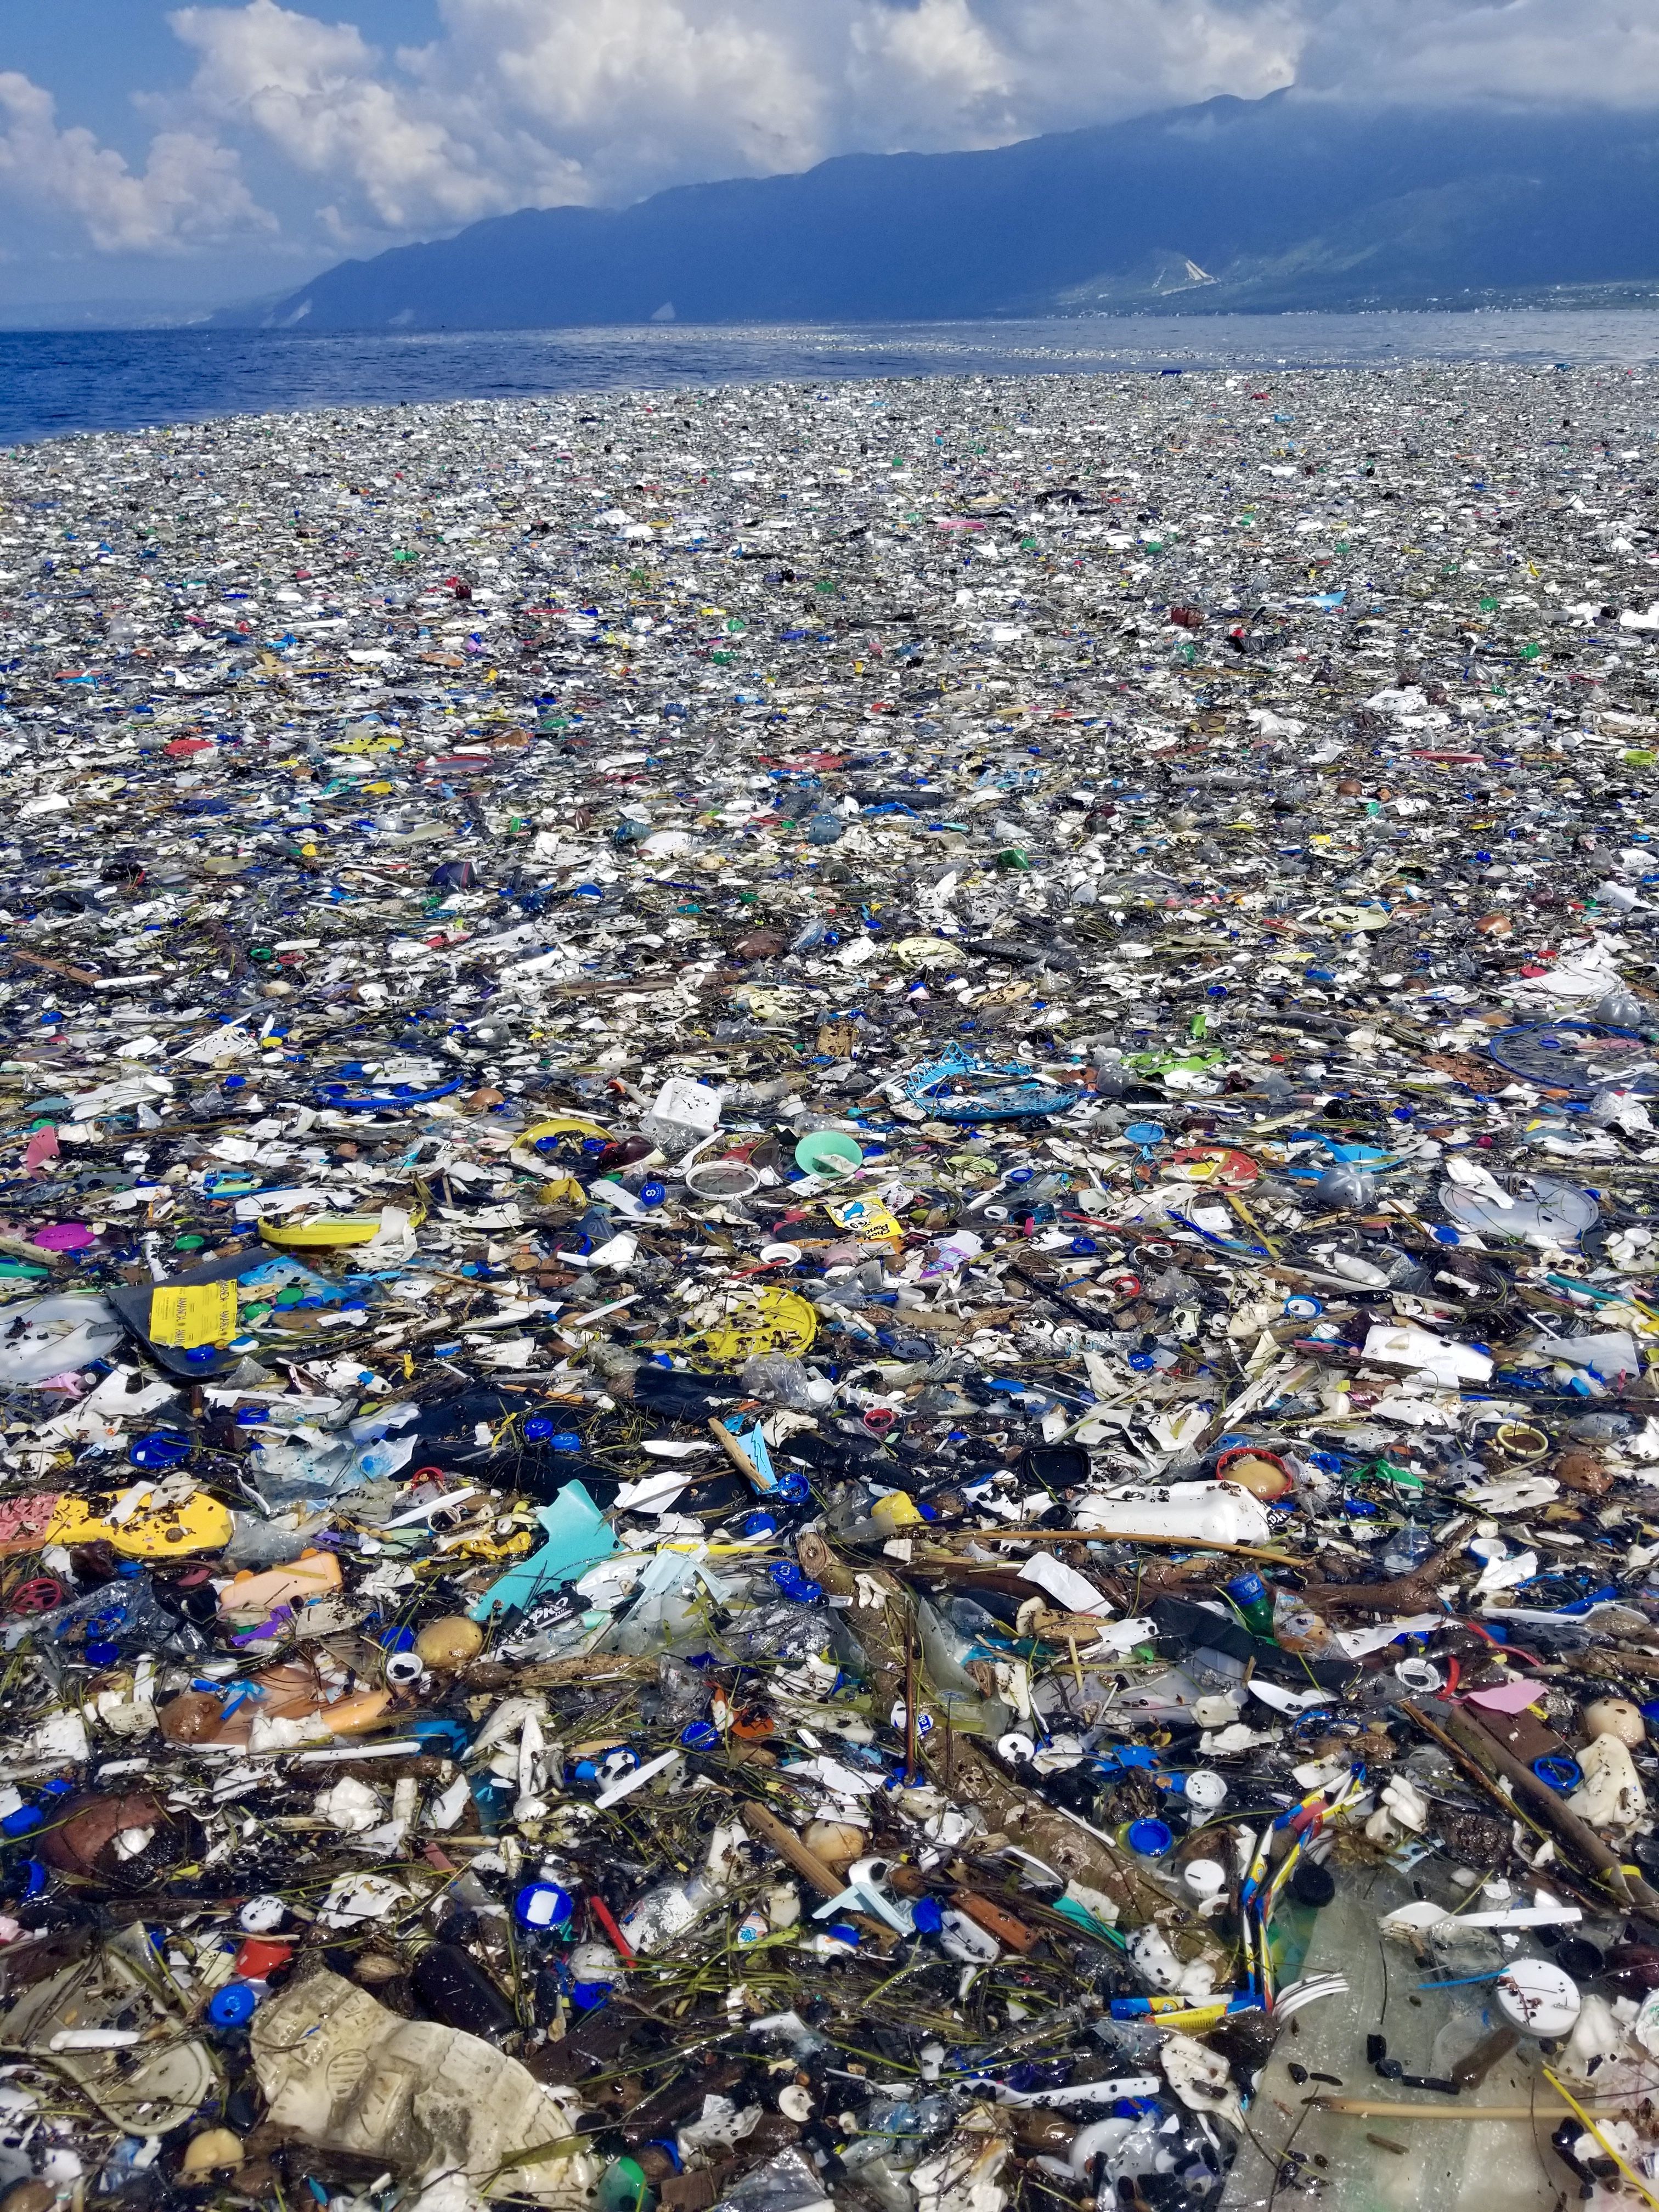 تصویر باور نکردنی از زباله های سطح ساحل در ابعاد وسیع